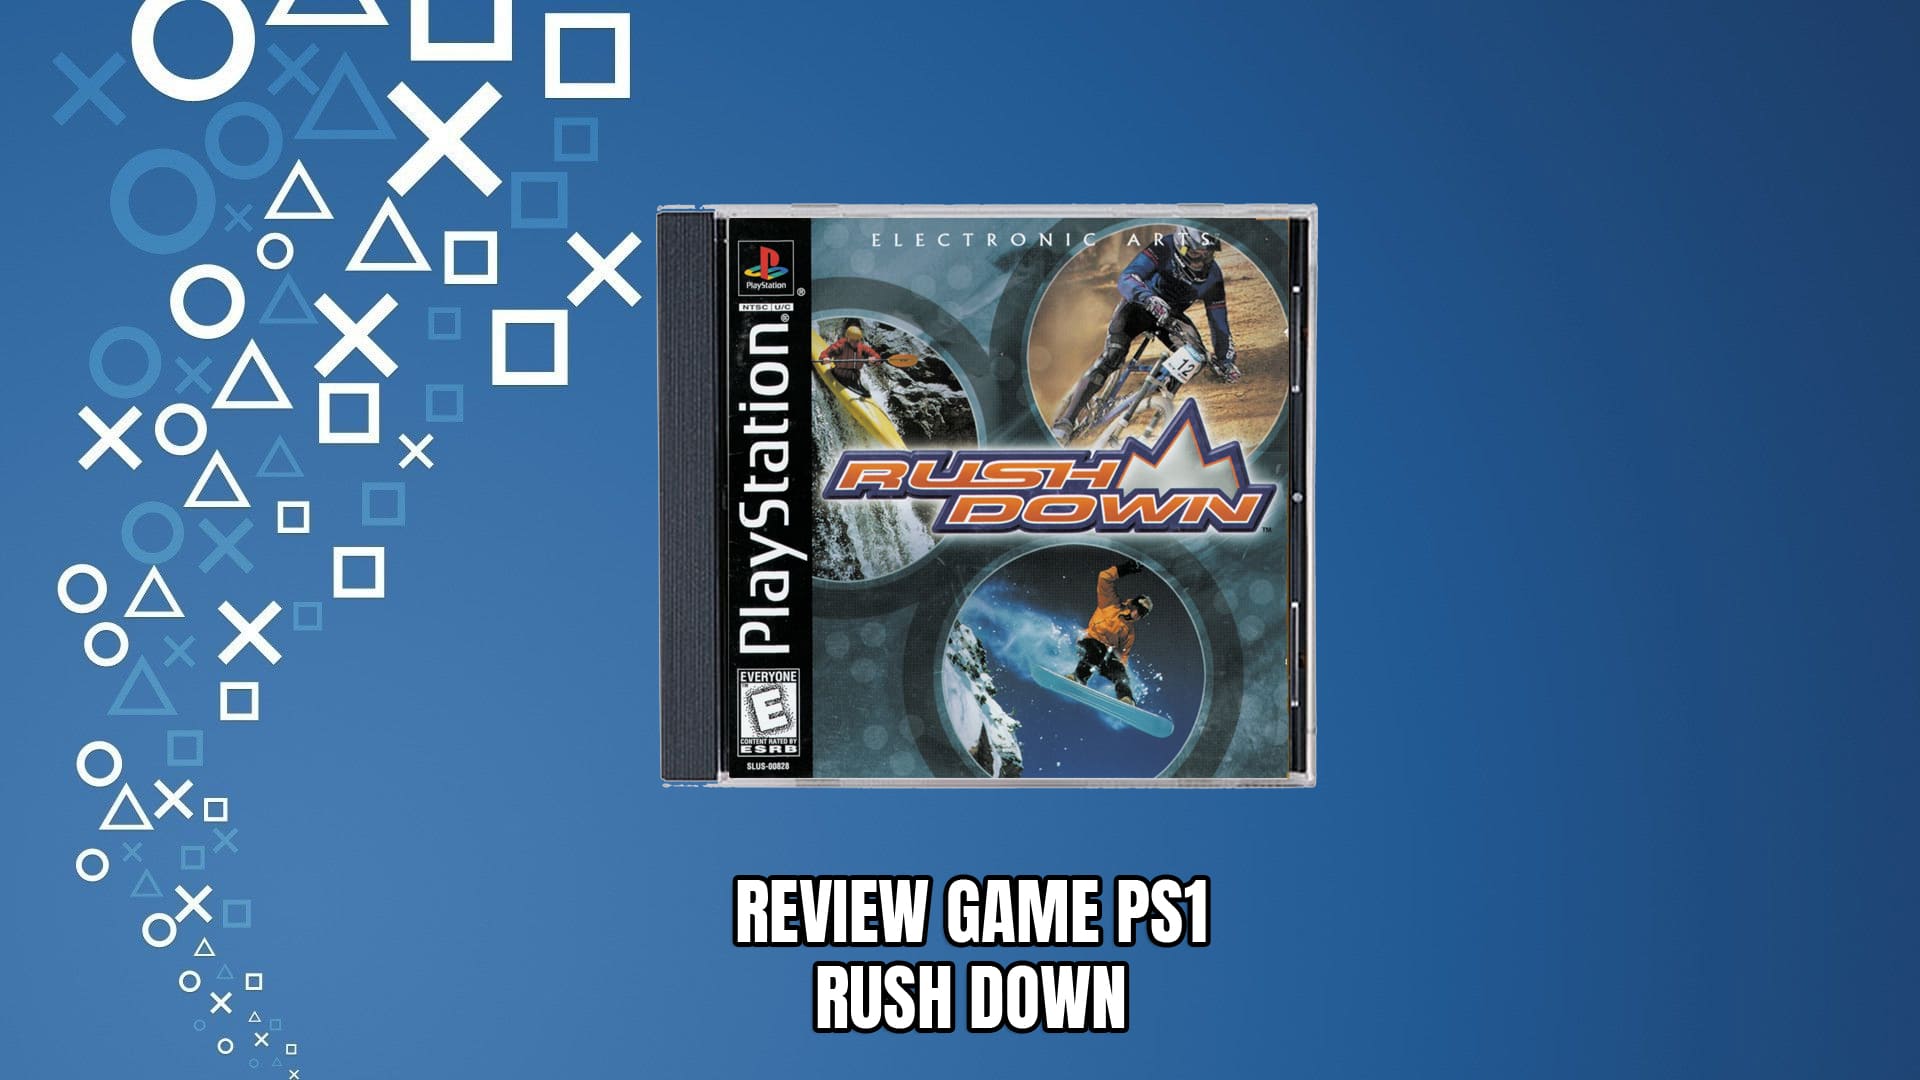 Review Game PS1 RUSH DOWN bonus dari Gameshark volume 1-9